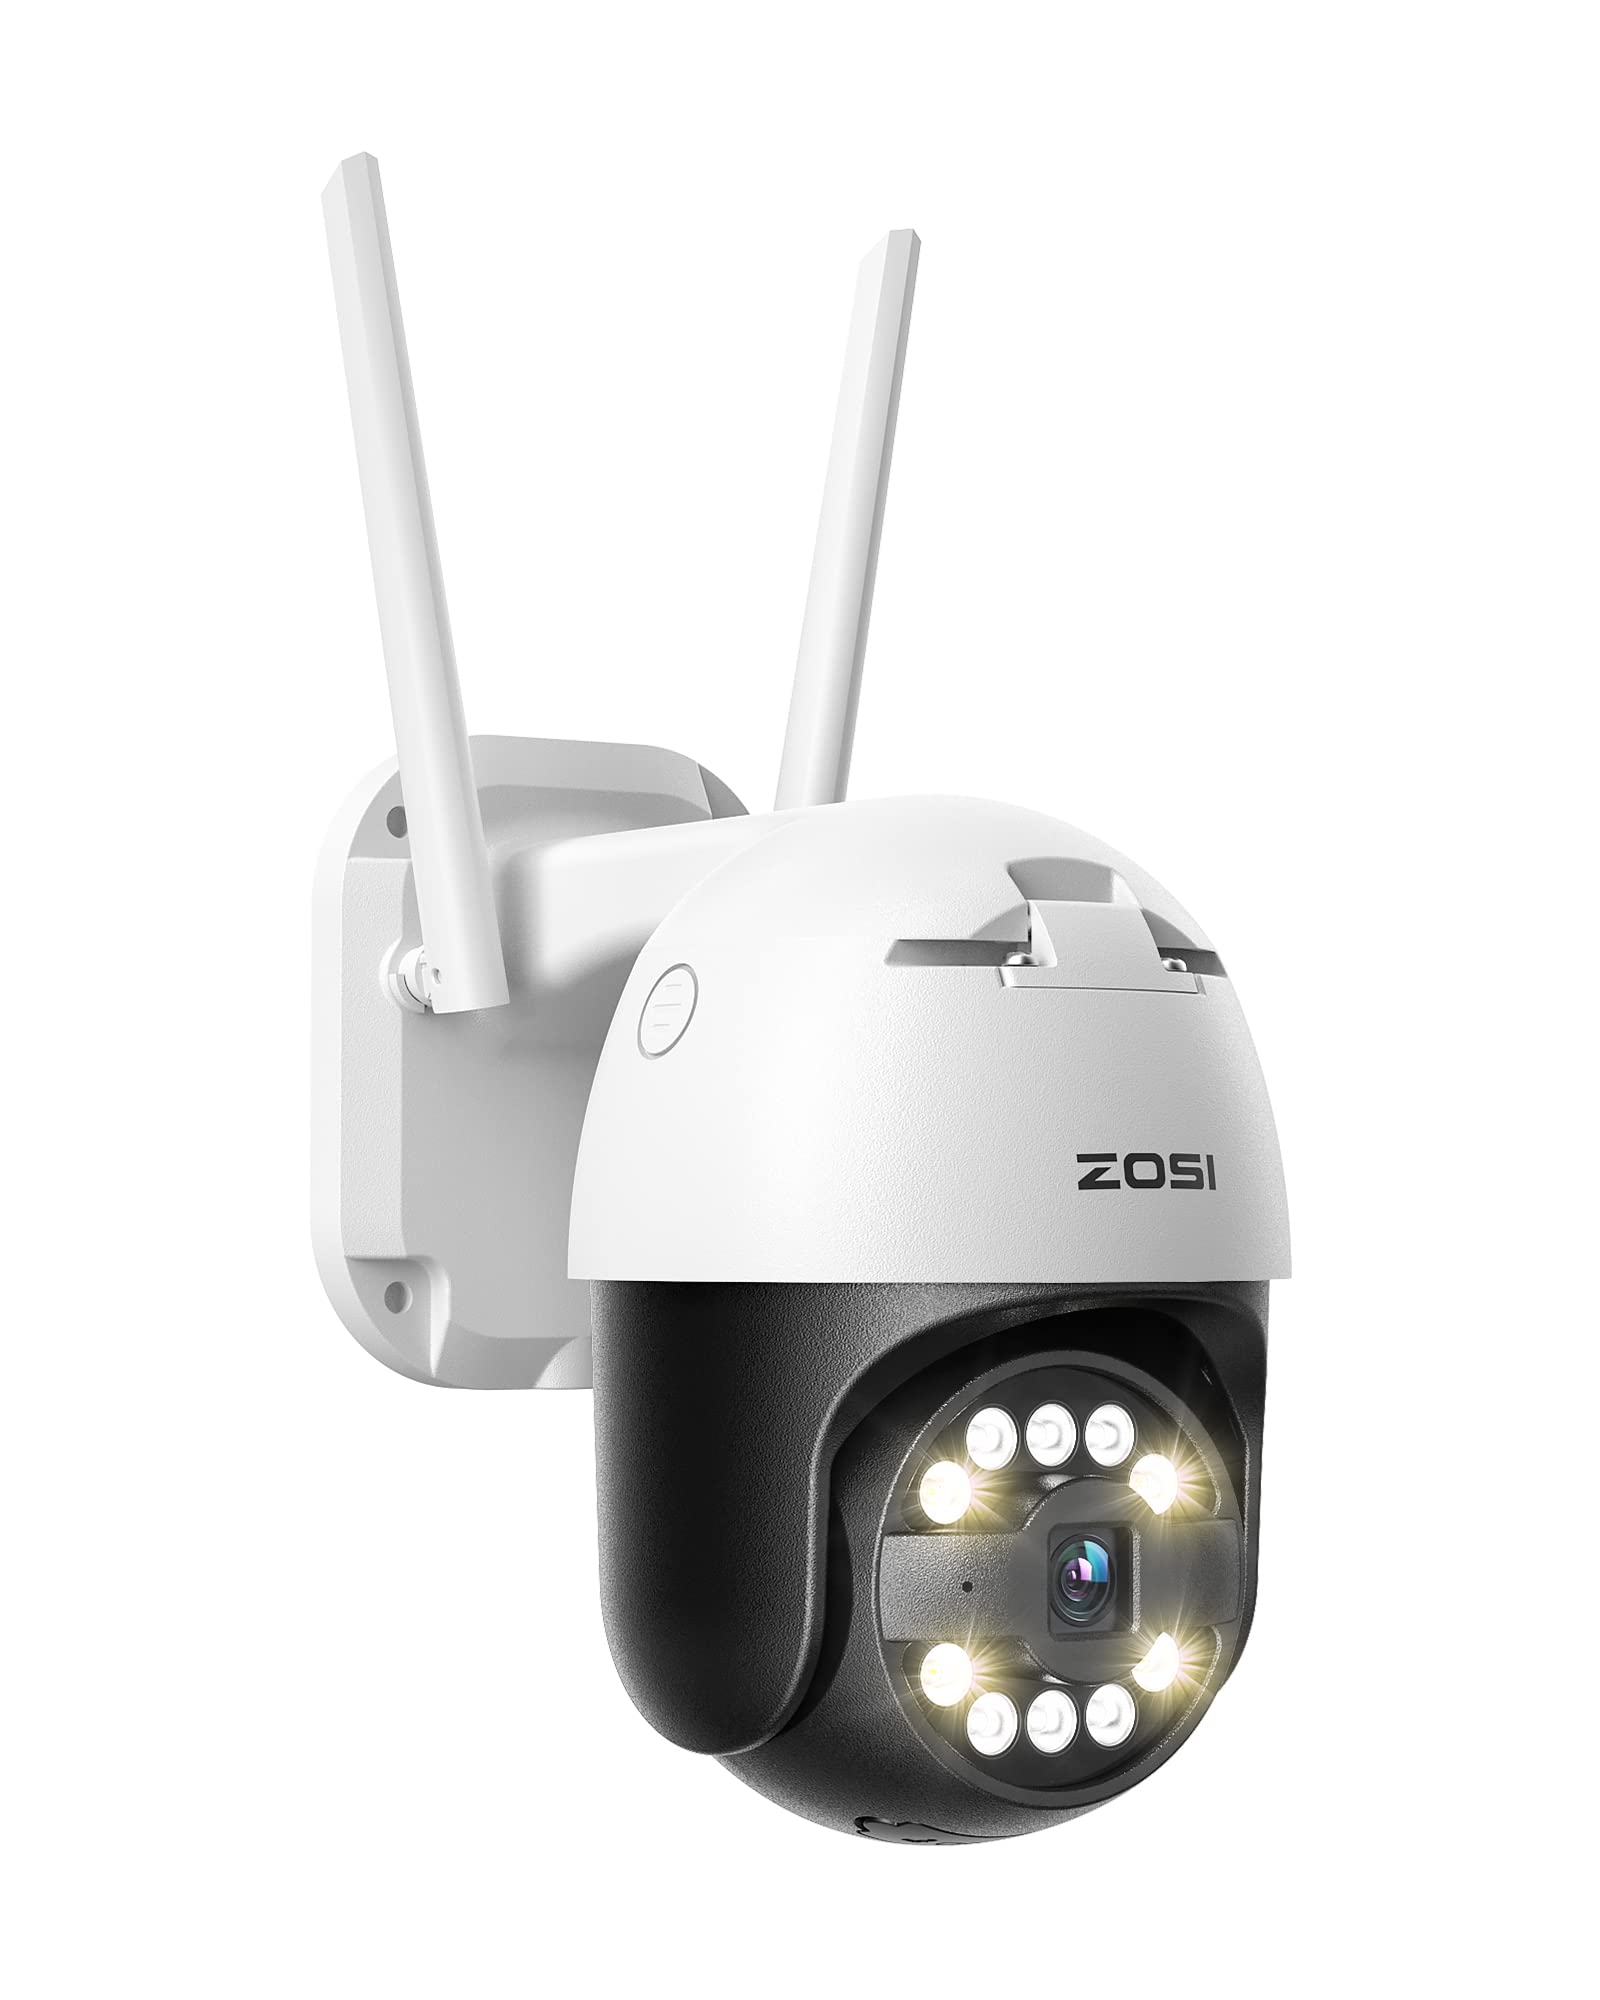 ZOSI 5MP 3K Pan/Tilt WLAN Überwachungskamera Aussen, 355°/140° Schwenkbar IP Kamera mit Plug-in Strom, 8X Digital Zoom, Personenerkennung, C296